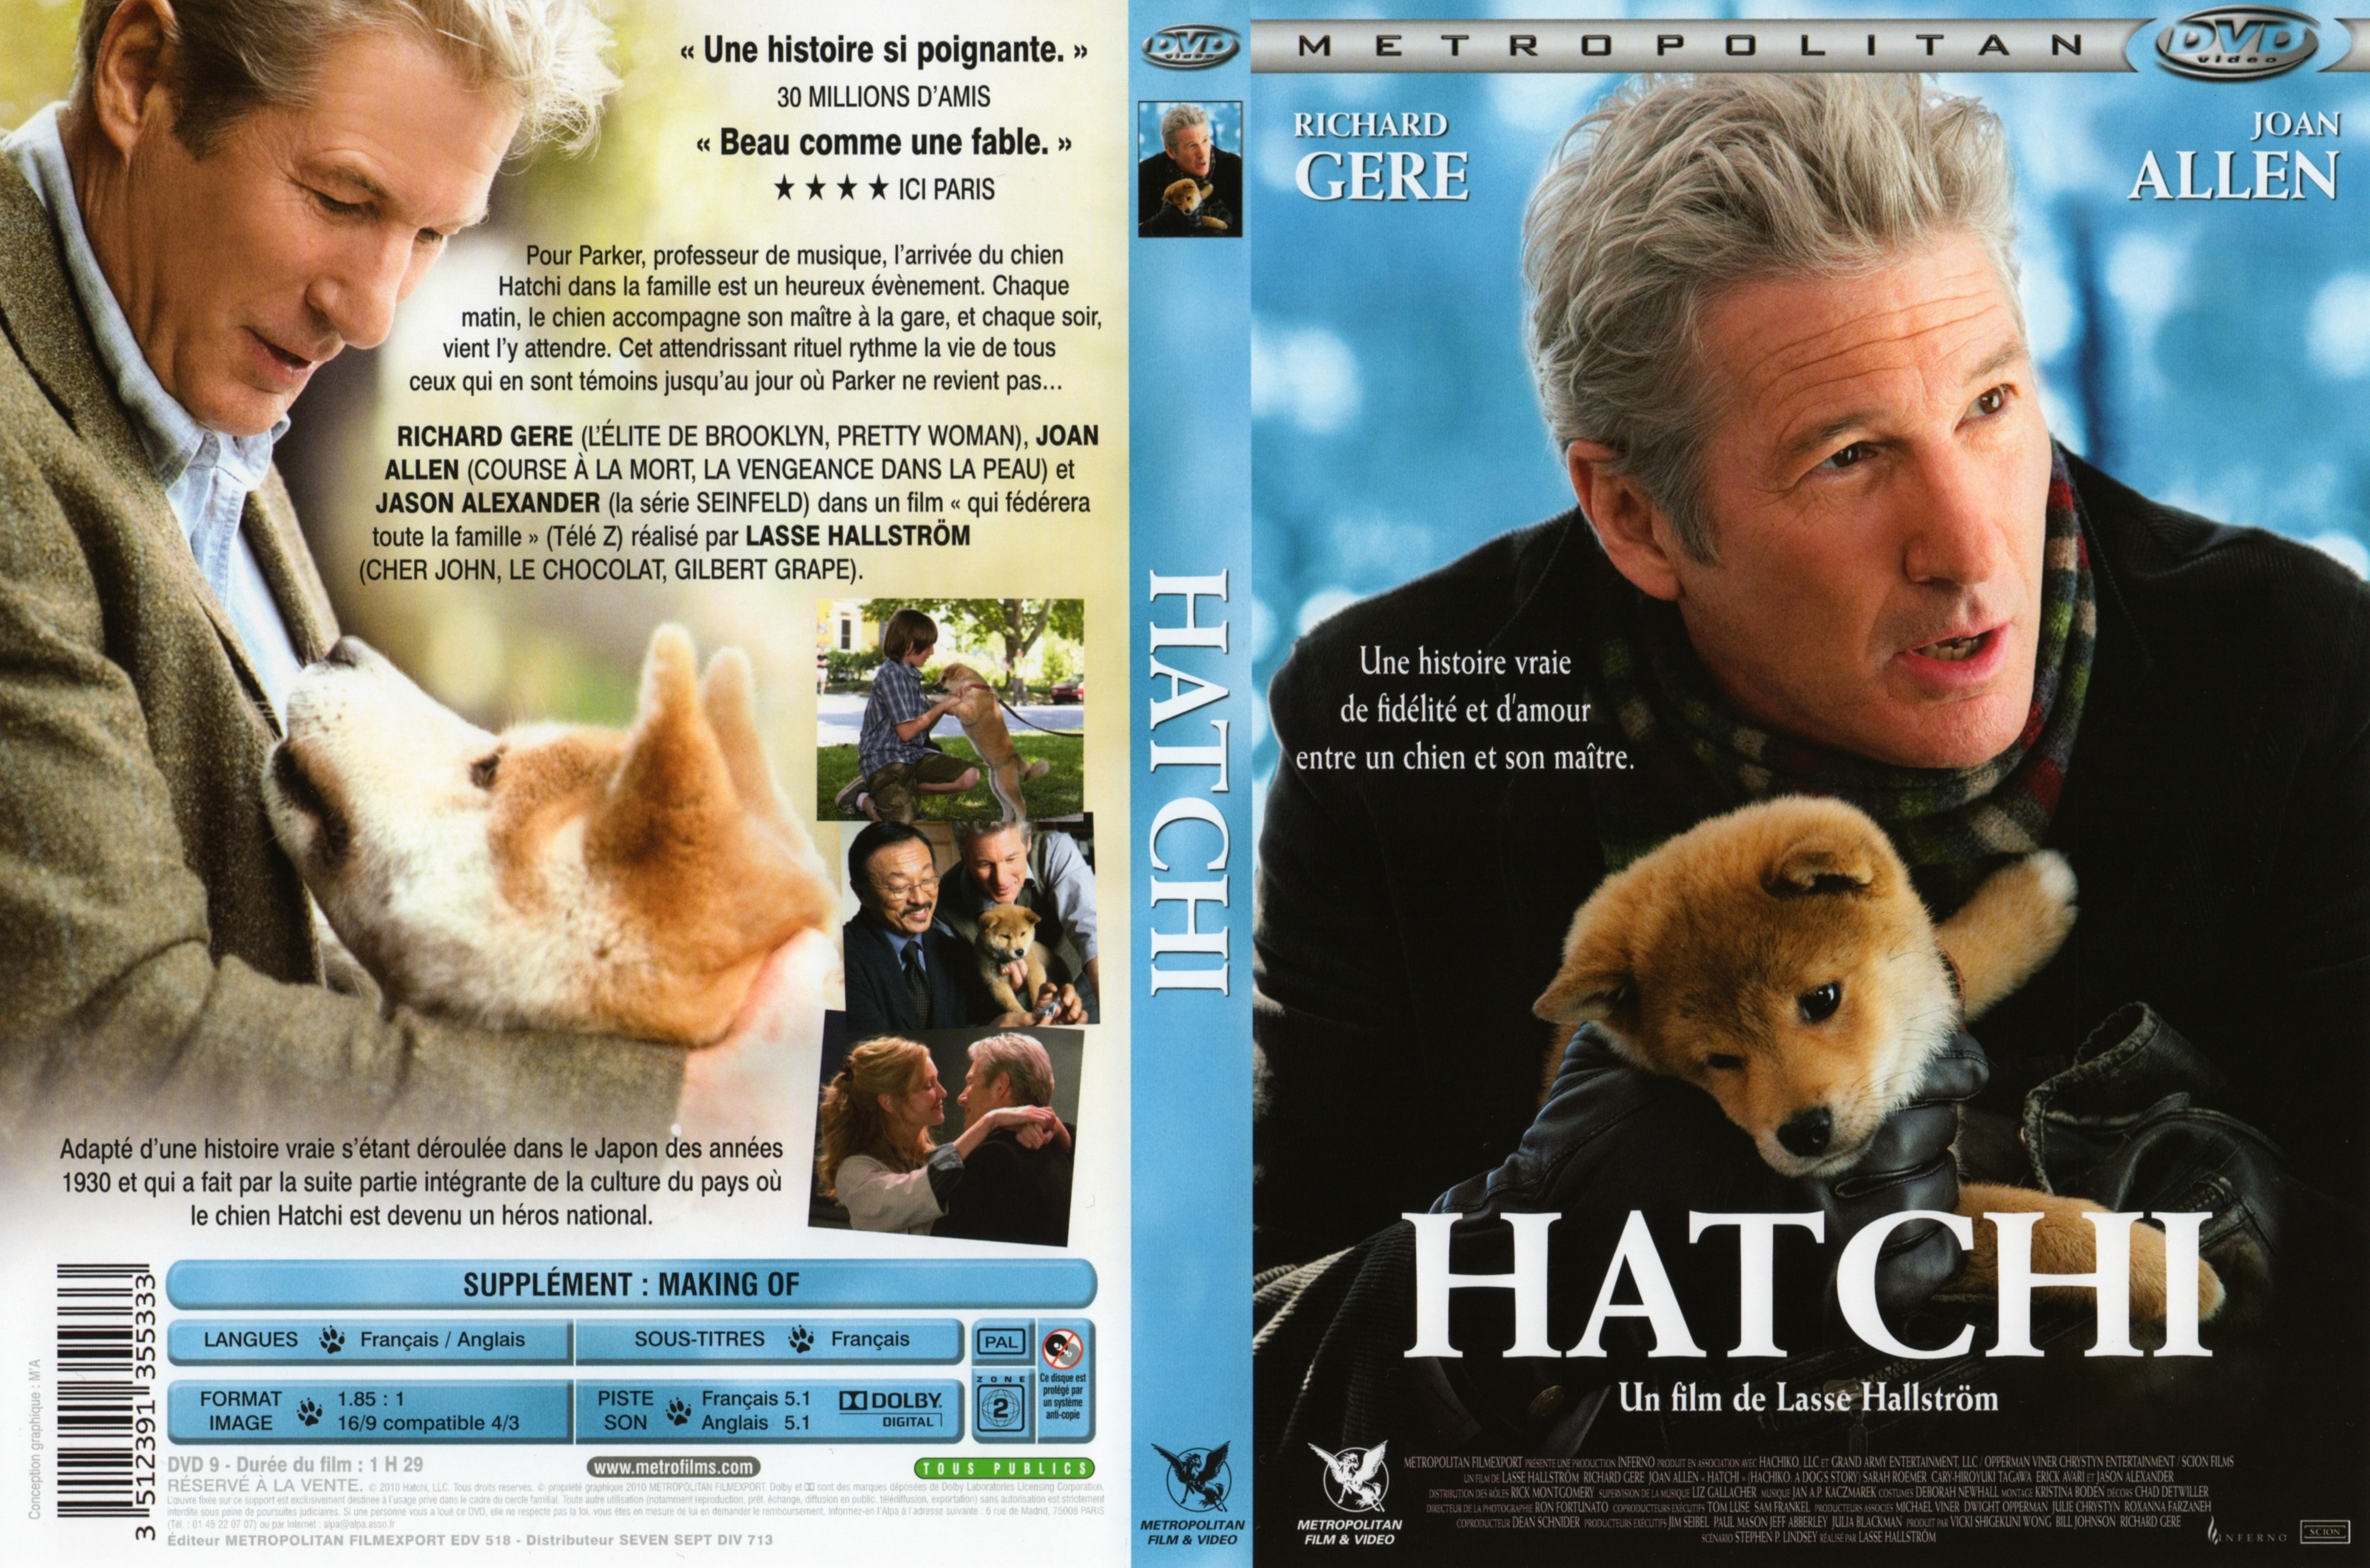 Jaquette DVD Hatchi v2